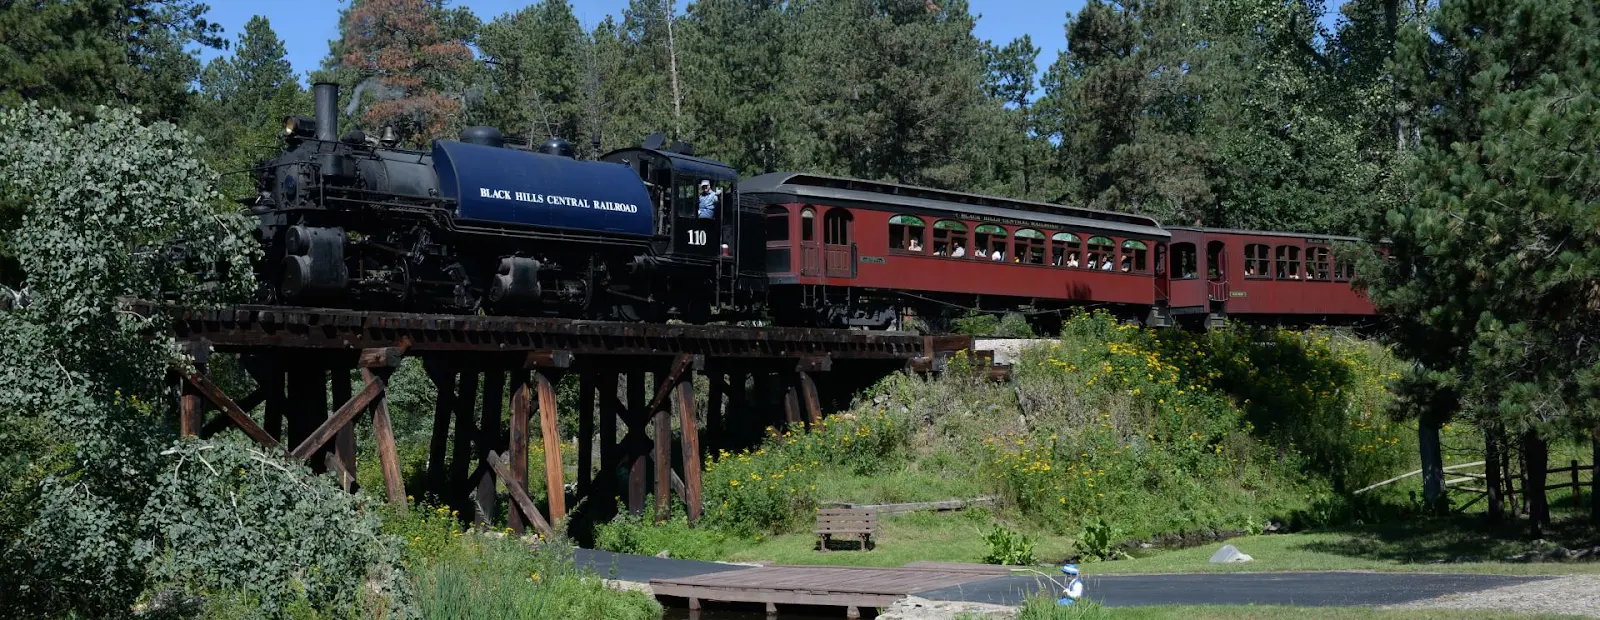 Black Hills Central Railroad – 1880 Train